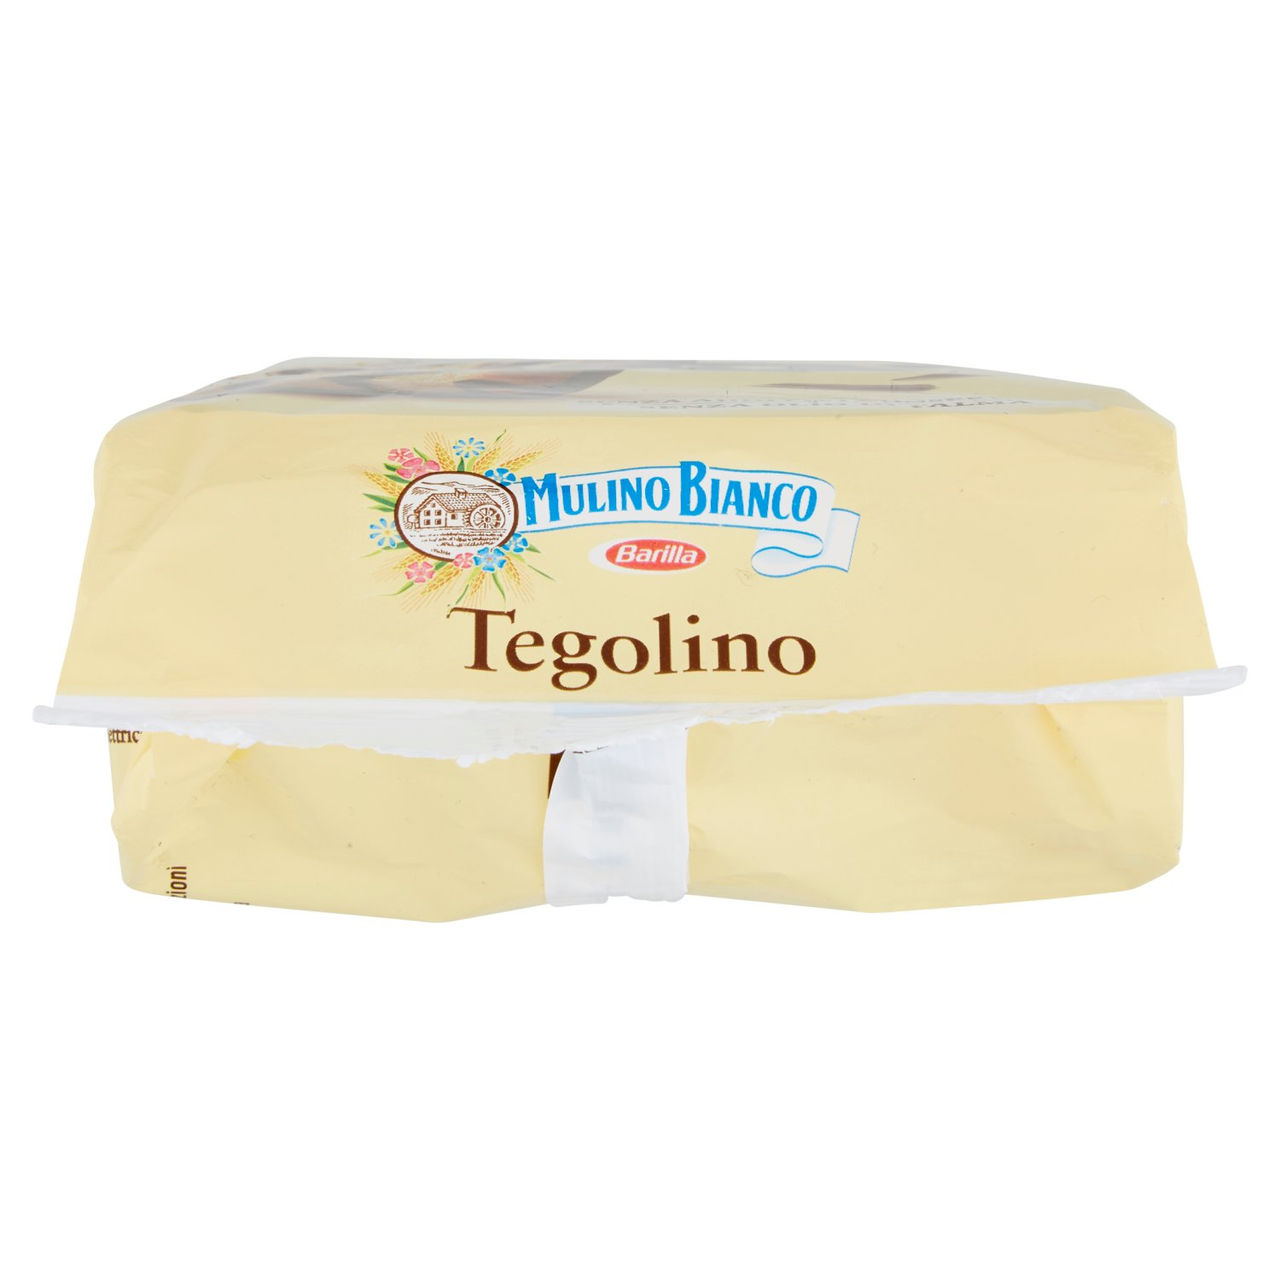 Mulino Bianco Tegolino 350 g in vendita online